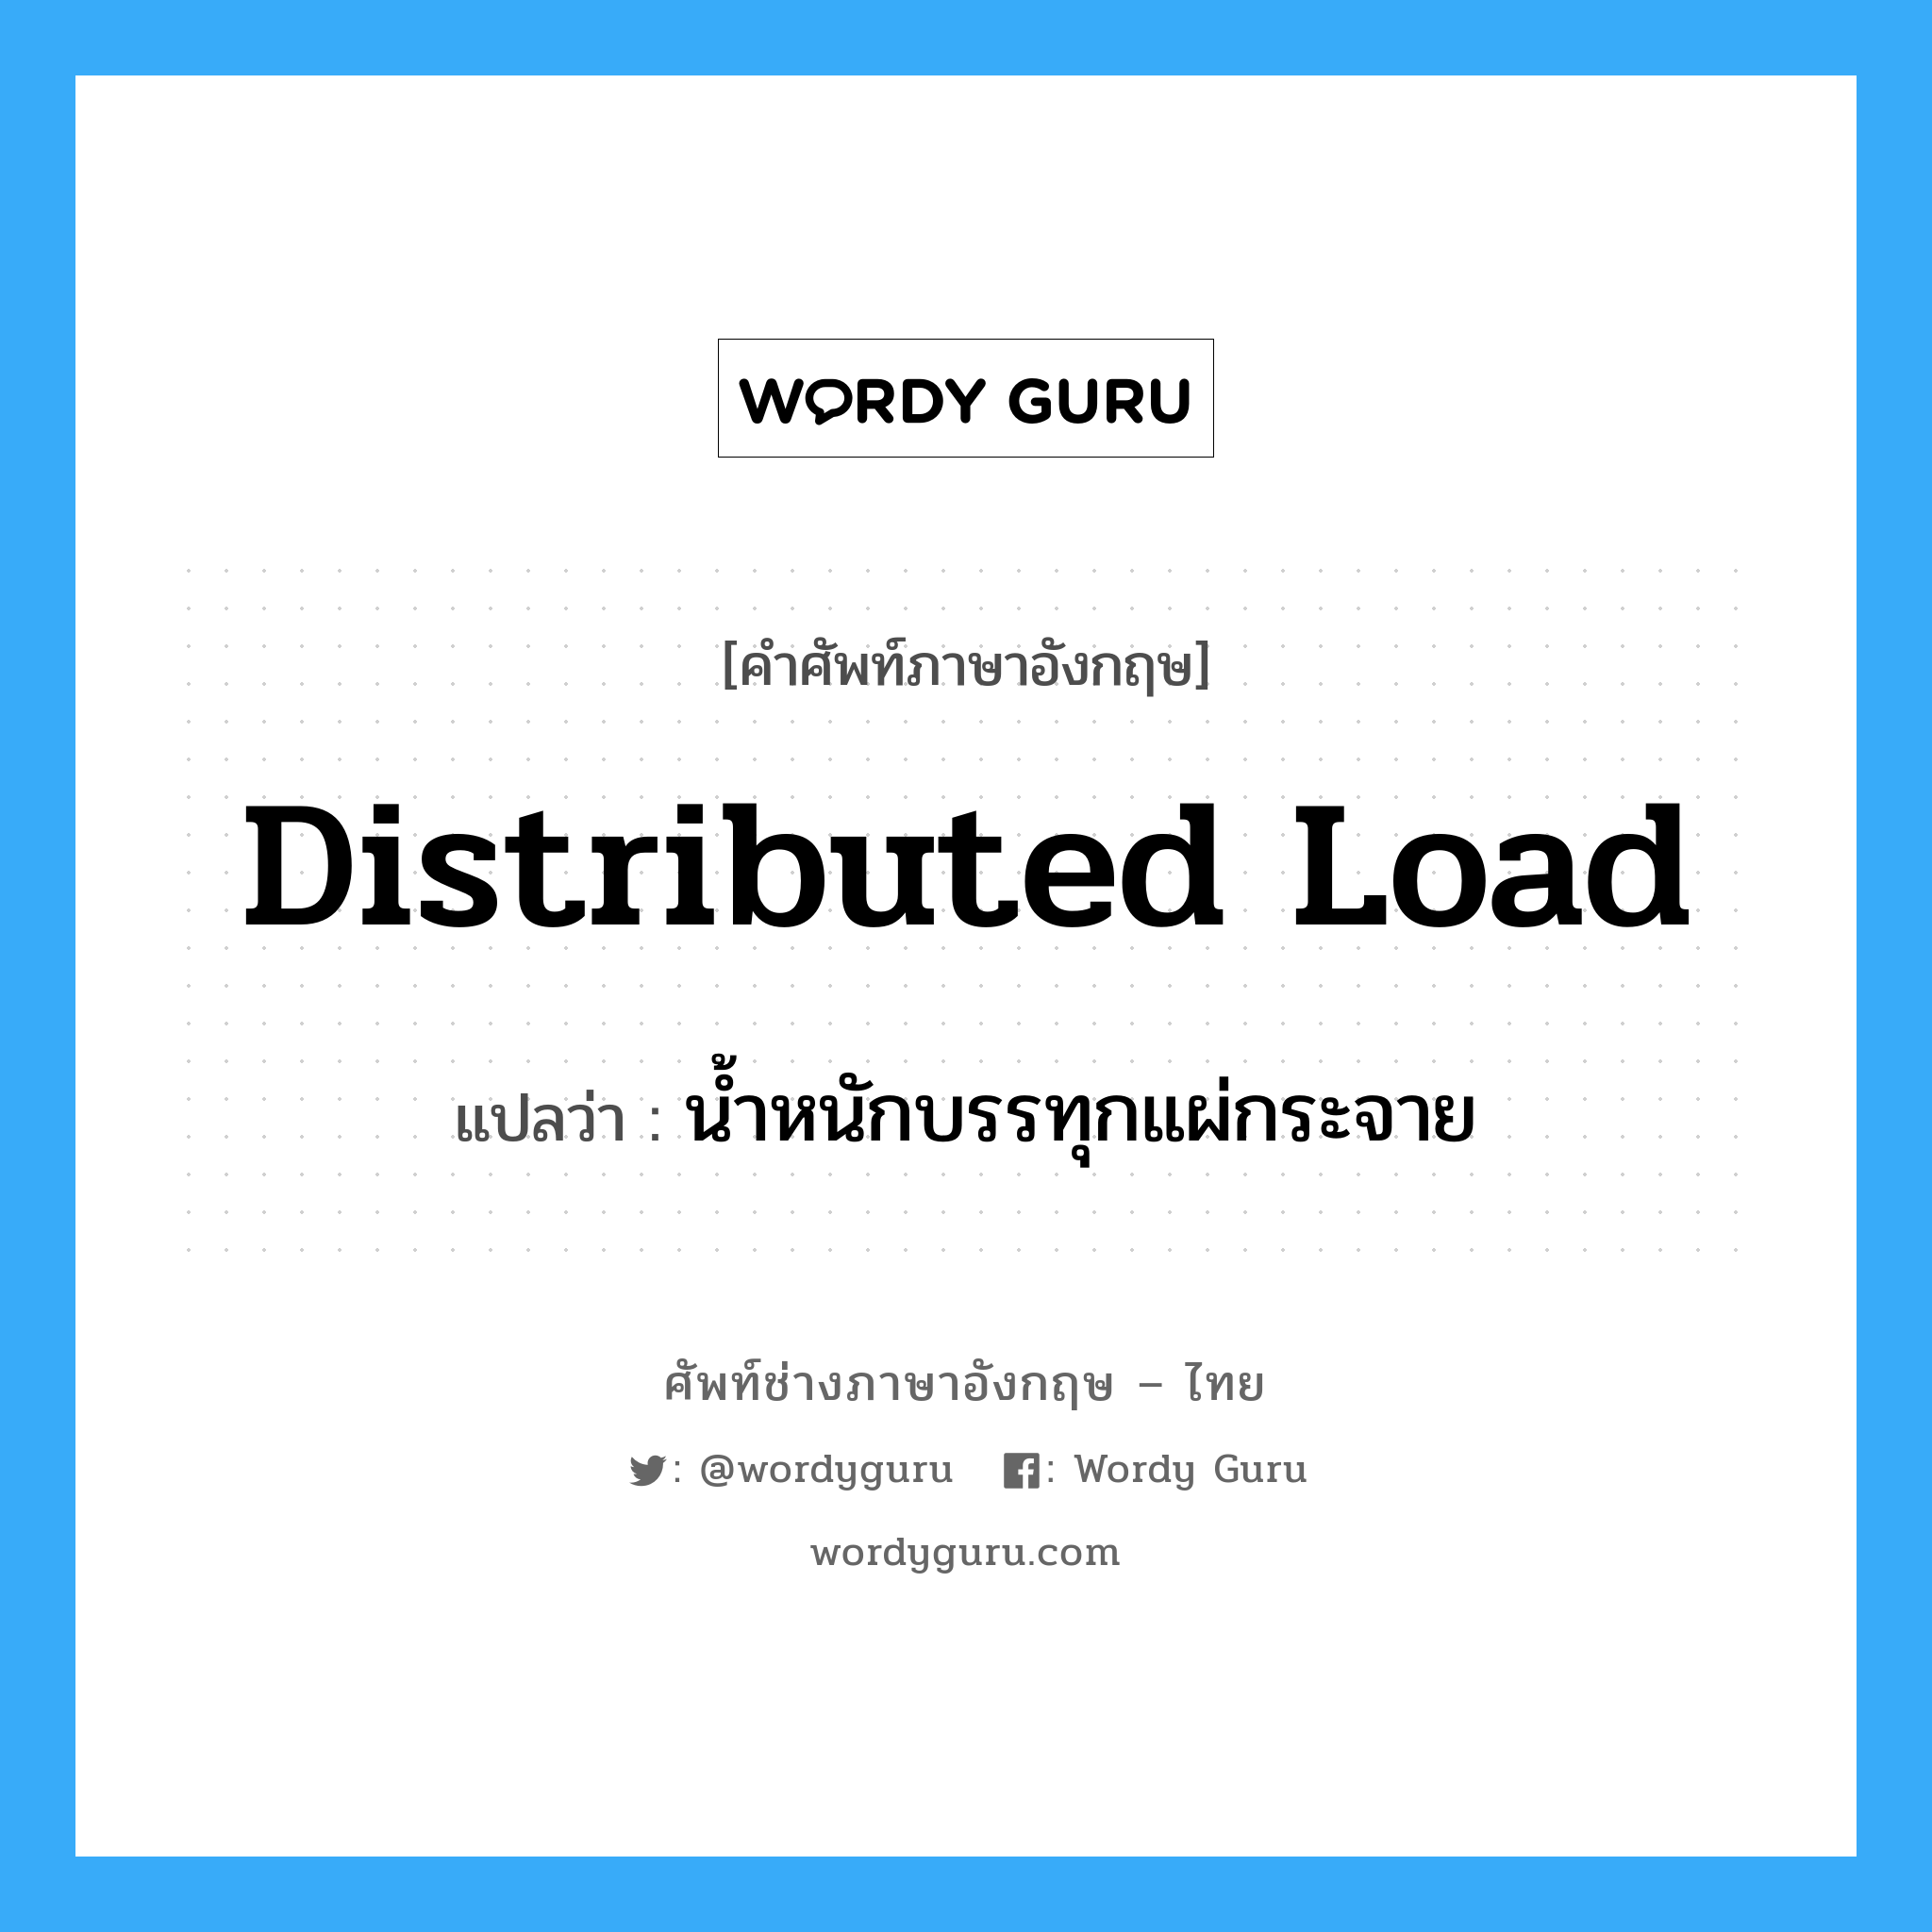 Distributed load: แปลว่า?, คำศัพท์ช่างภาษาอังกฤษ - ไทย distributed load คำศัพท์ภาษาอังกฤษ distributed load แปลว่า น้ำหนักบรรทุกแผ่กระจาย